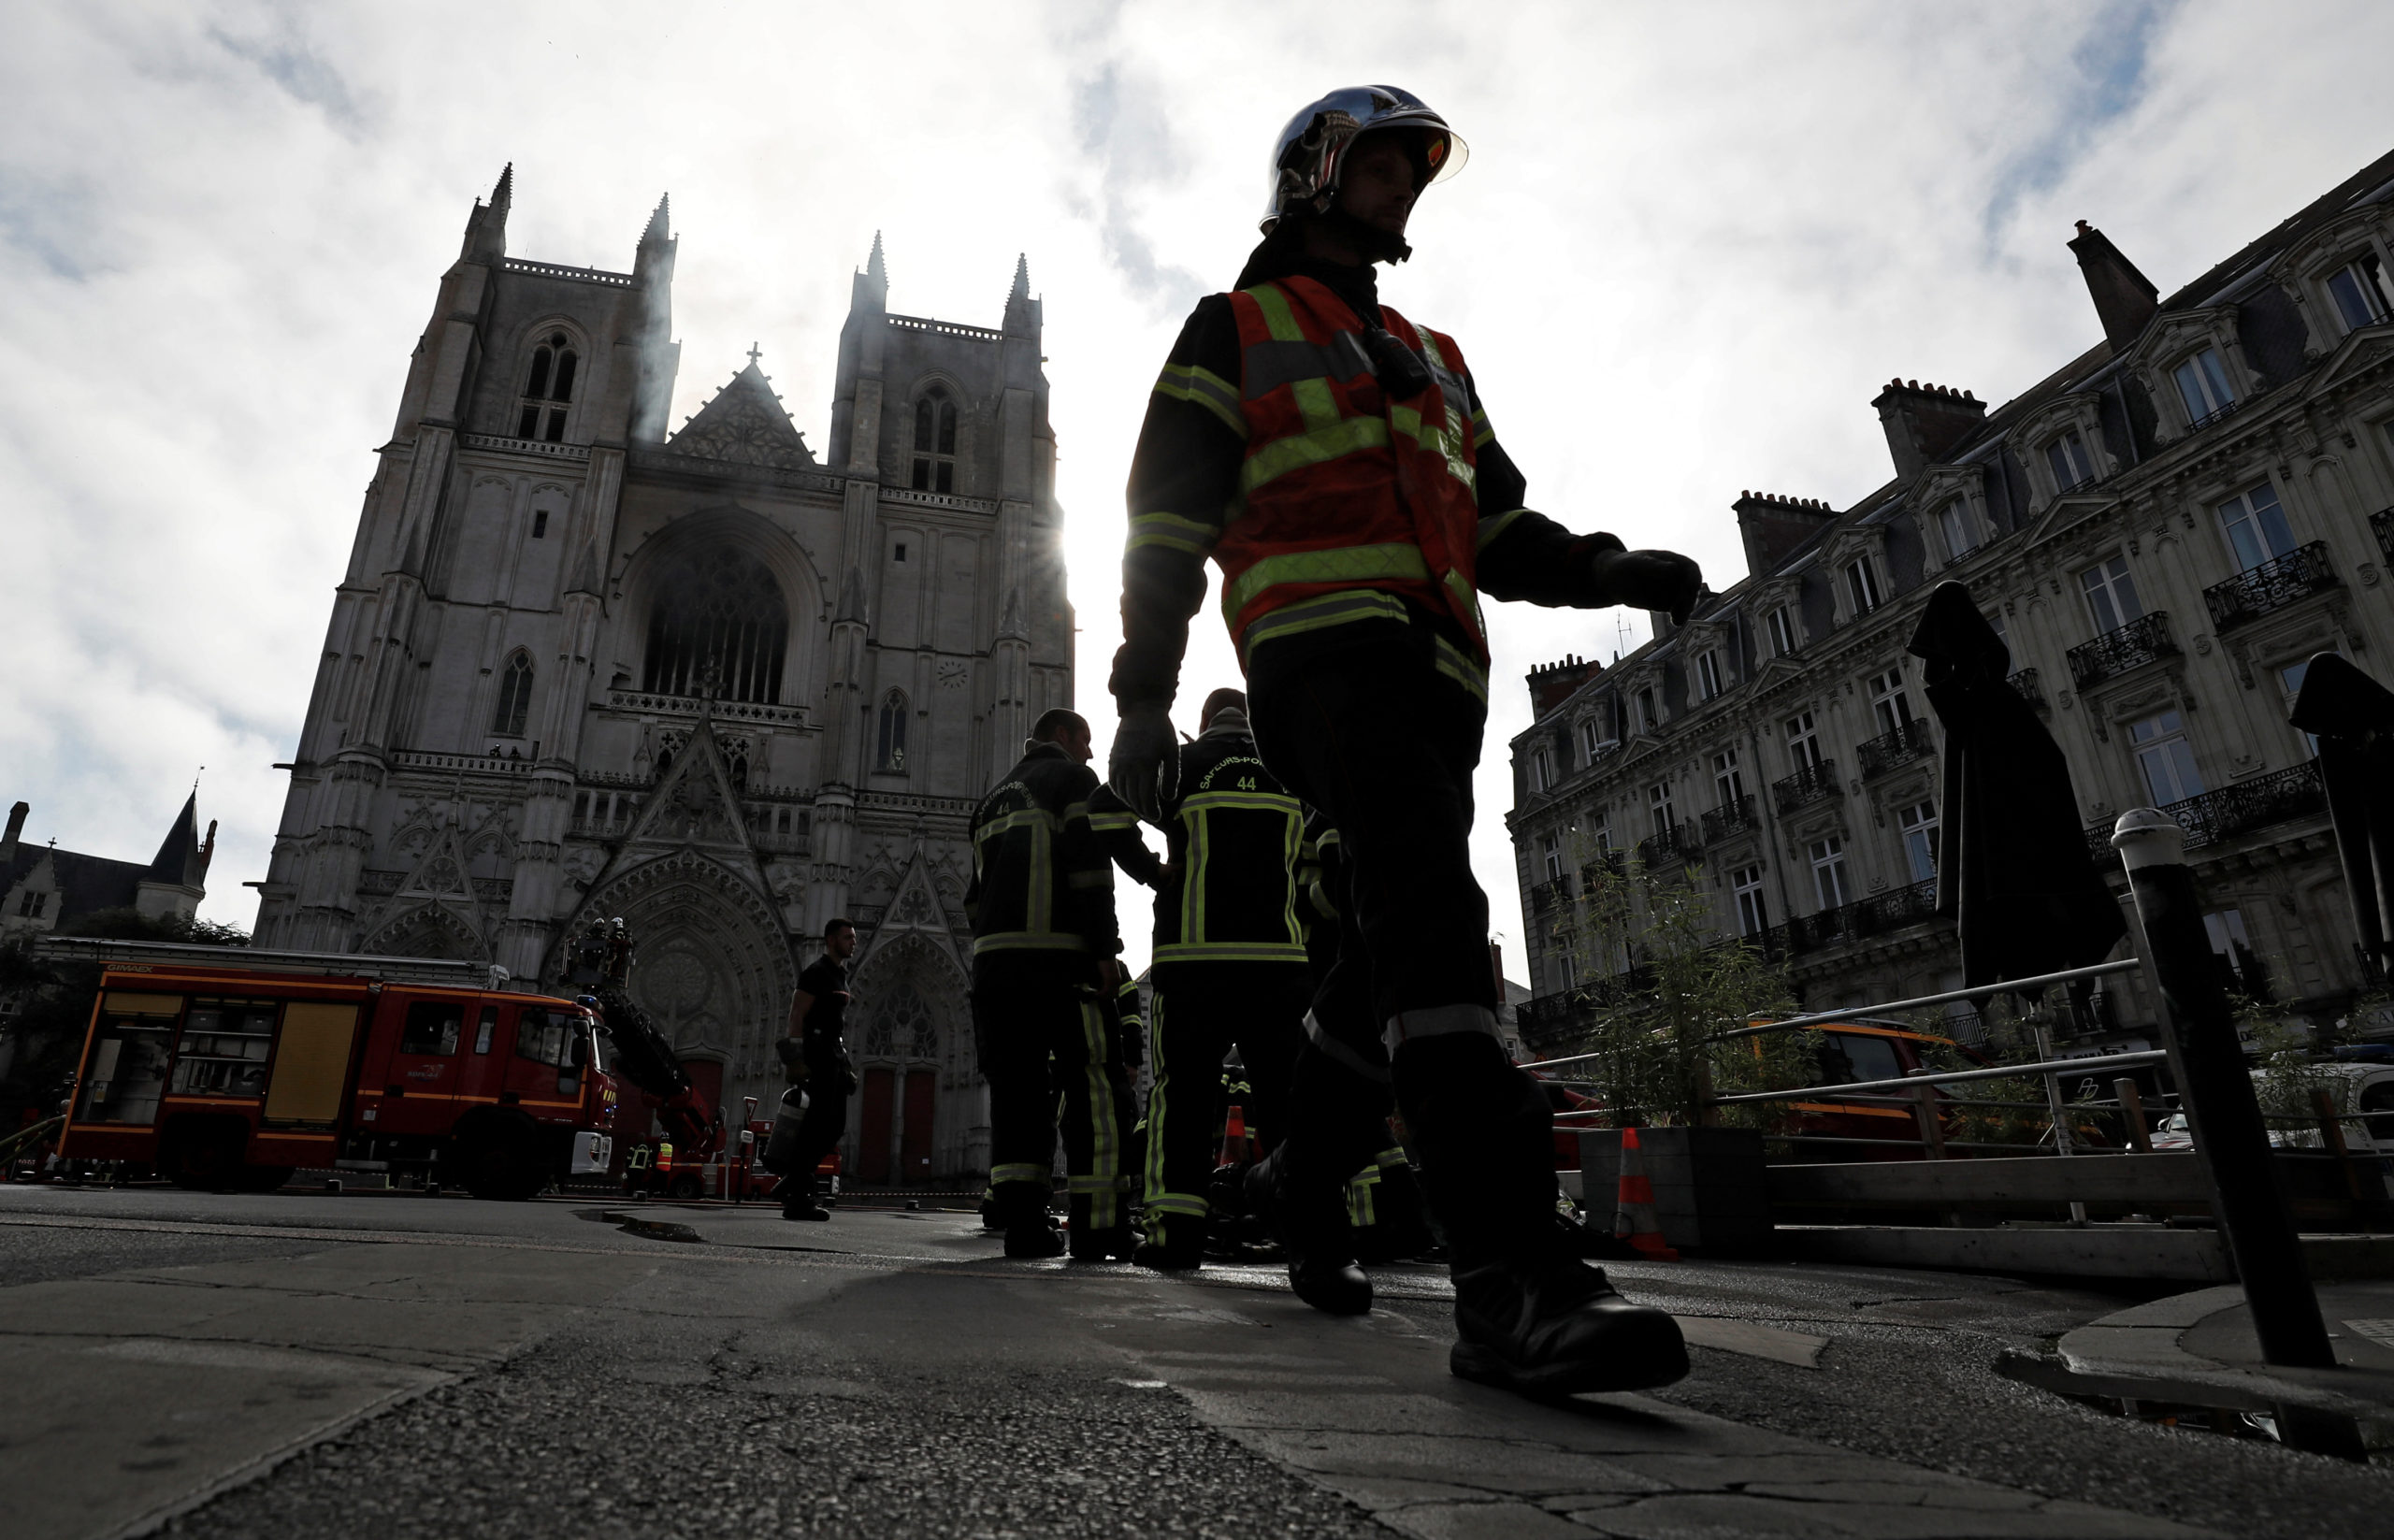 Incendie à la cathédrale de Nantes, une enquête judiciaire ouverte